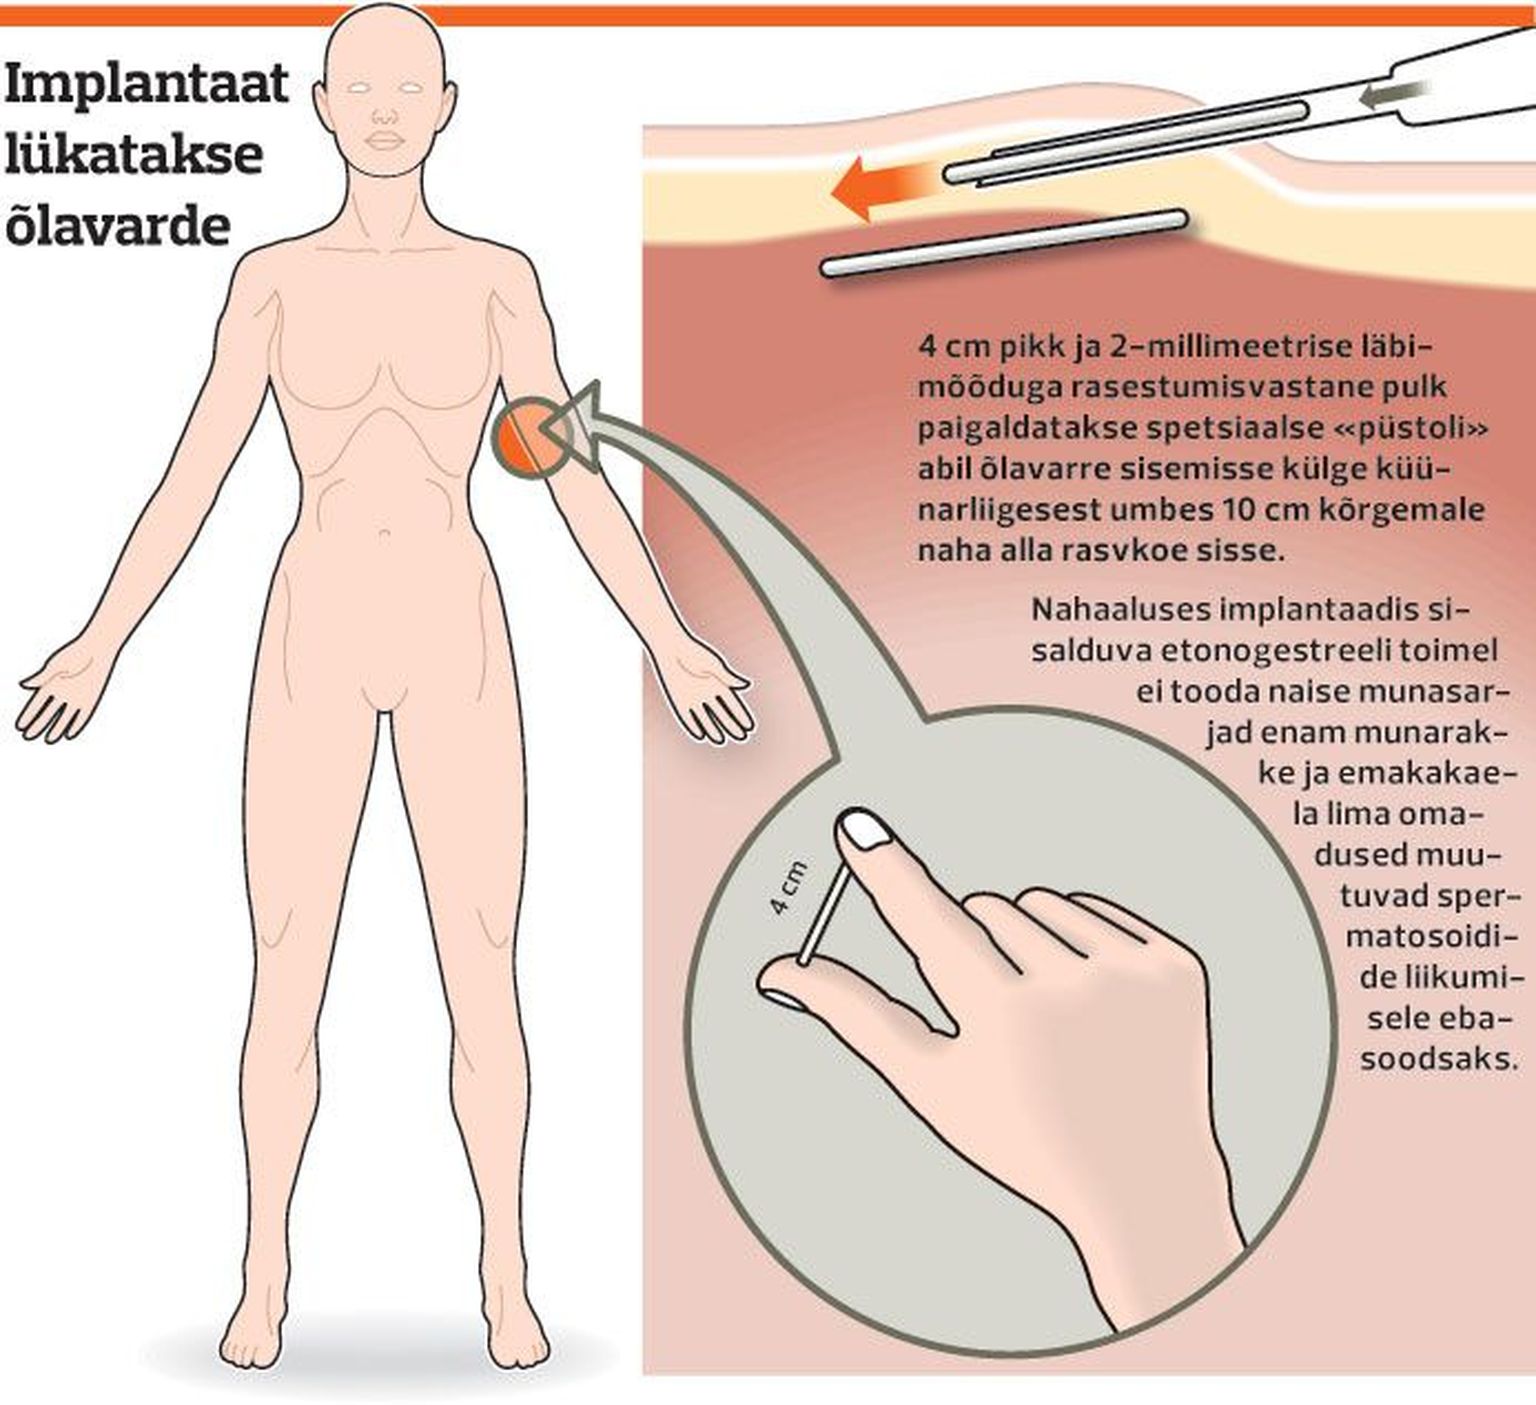 Rasestumisvastase implantaadi paigaldamine